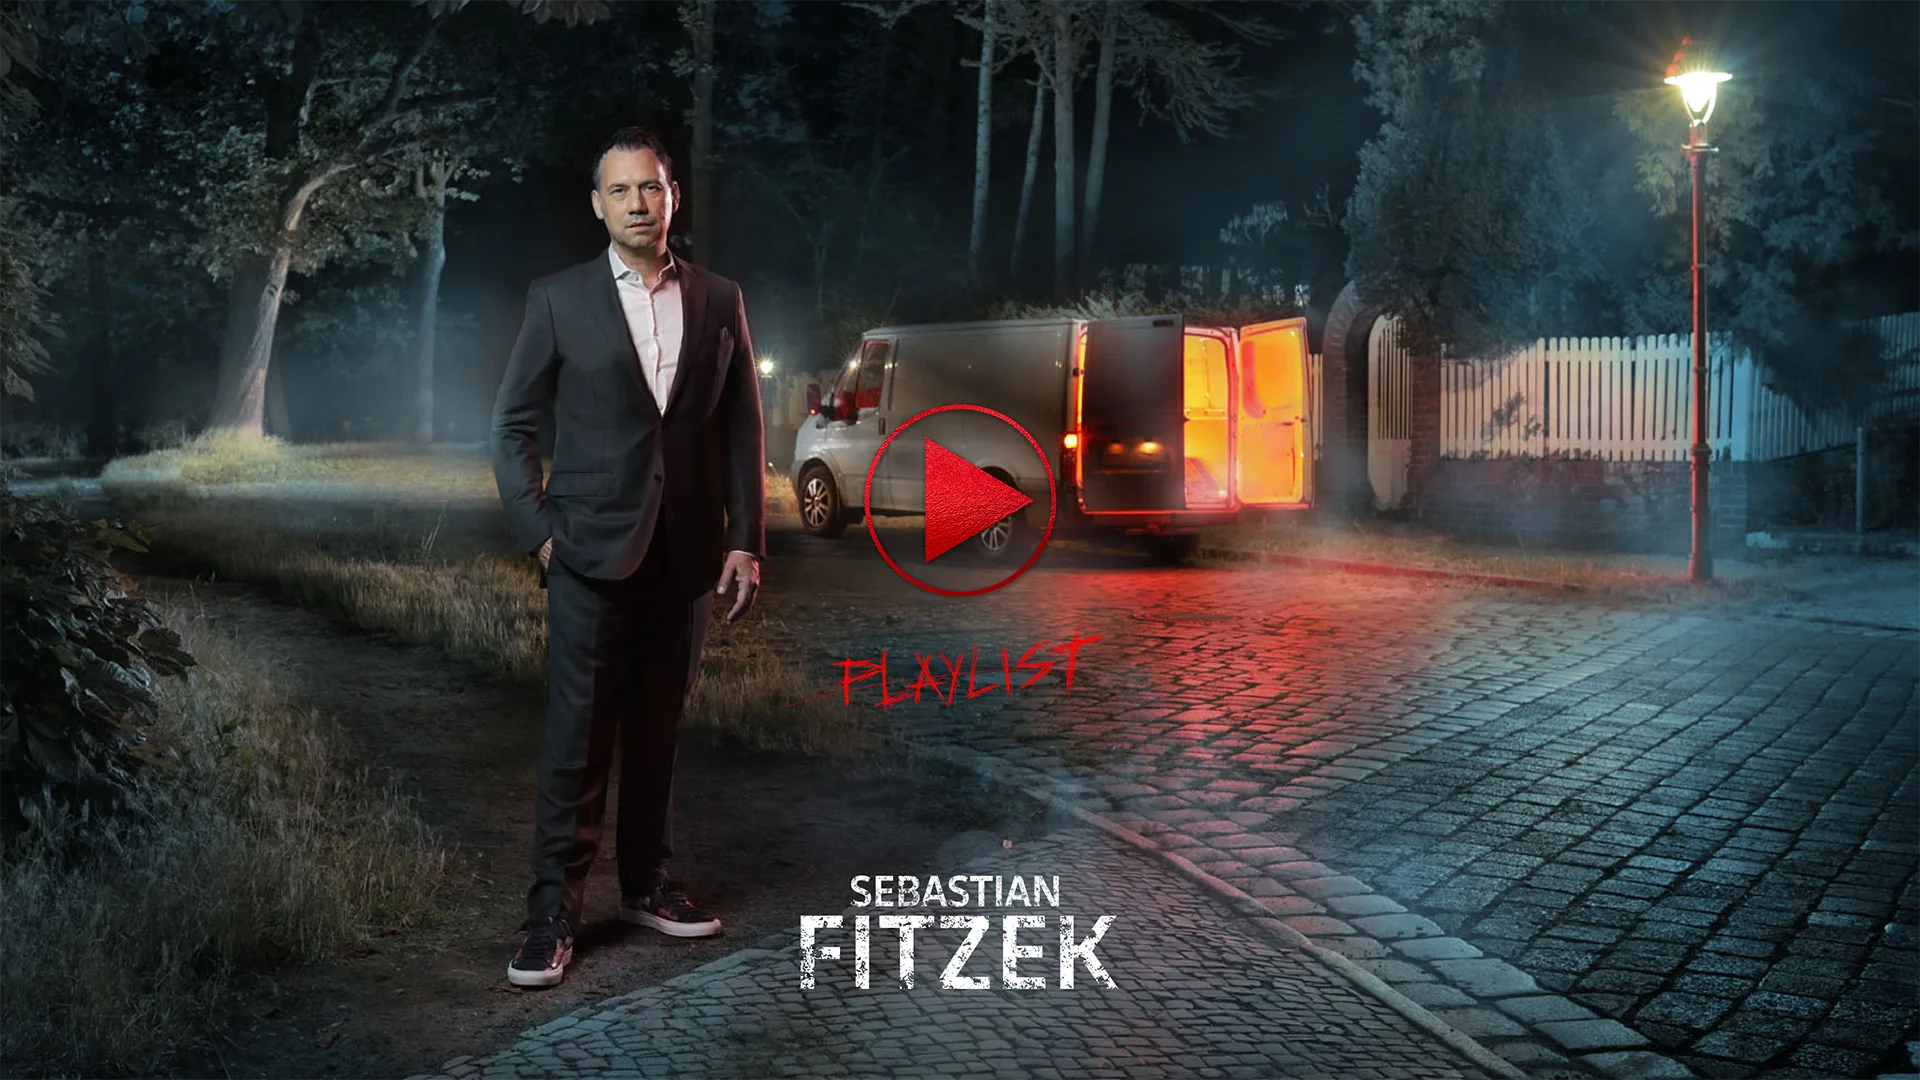 Ein Bild zeigt das Cover der Kampagne zu dem Buch "Die Playlist" von Sebastian Fitzek.